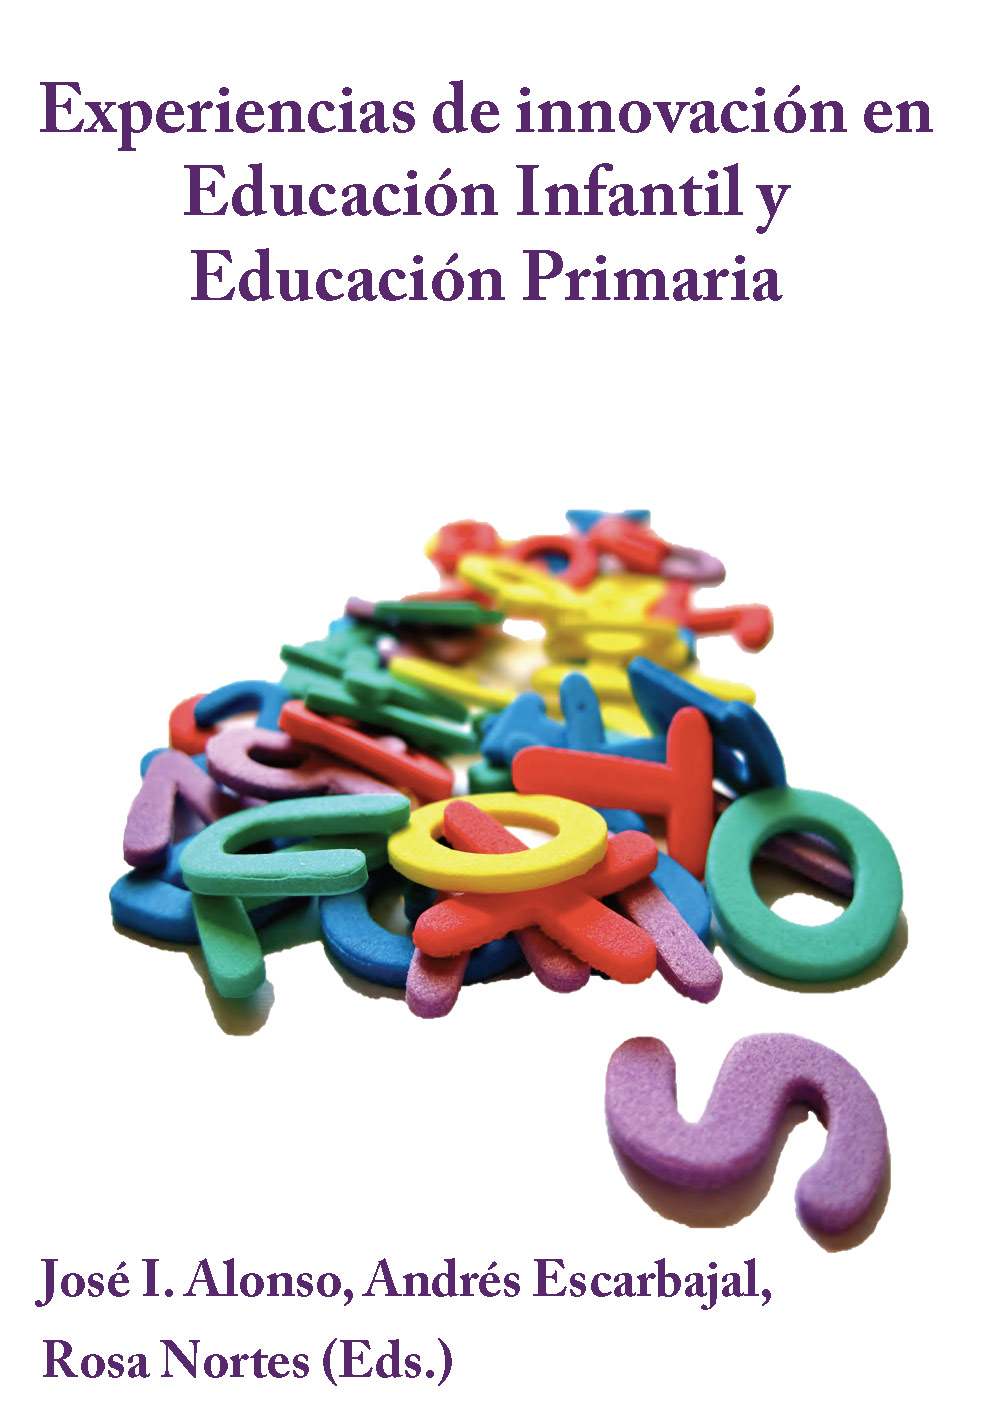 Imagen de portada del libro Experiencias de innovación en Educación Infantil y Educación Primaria